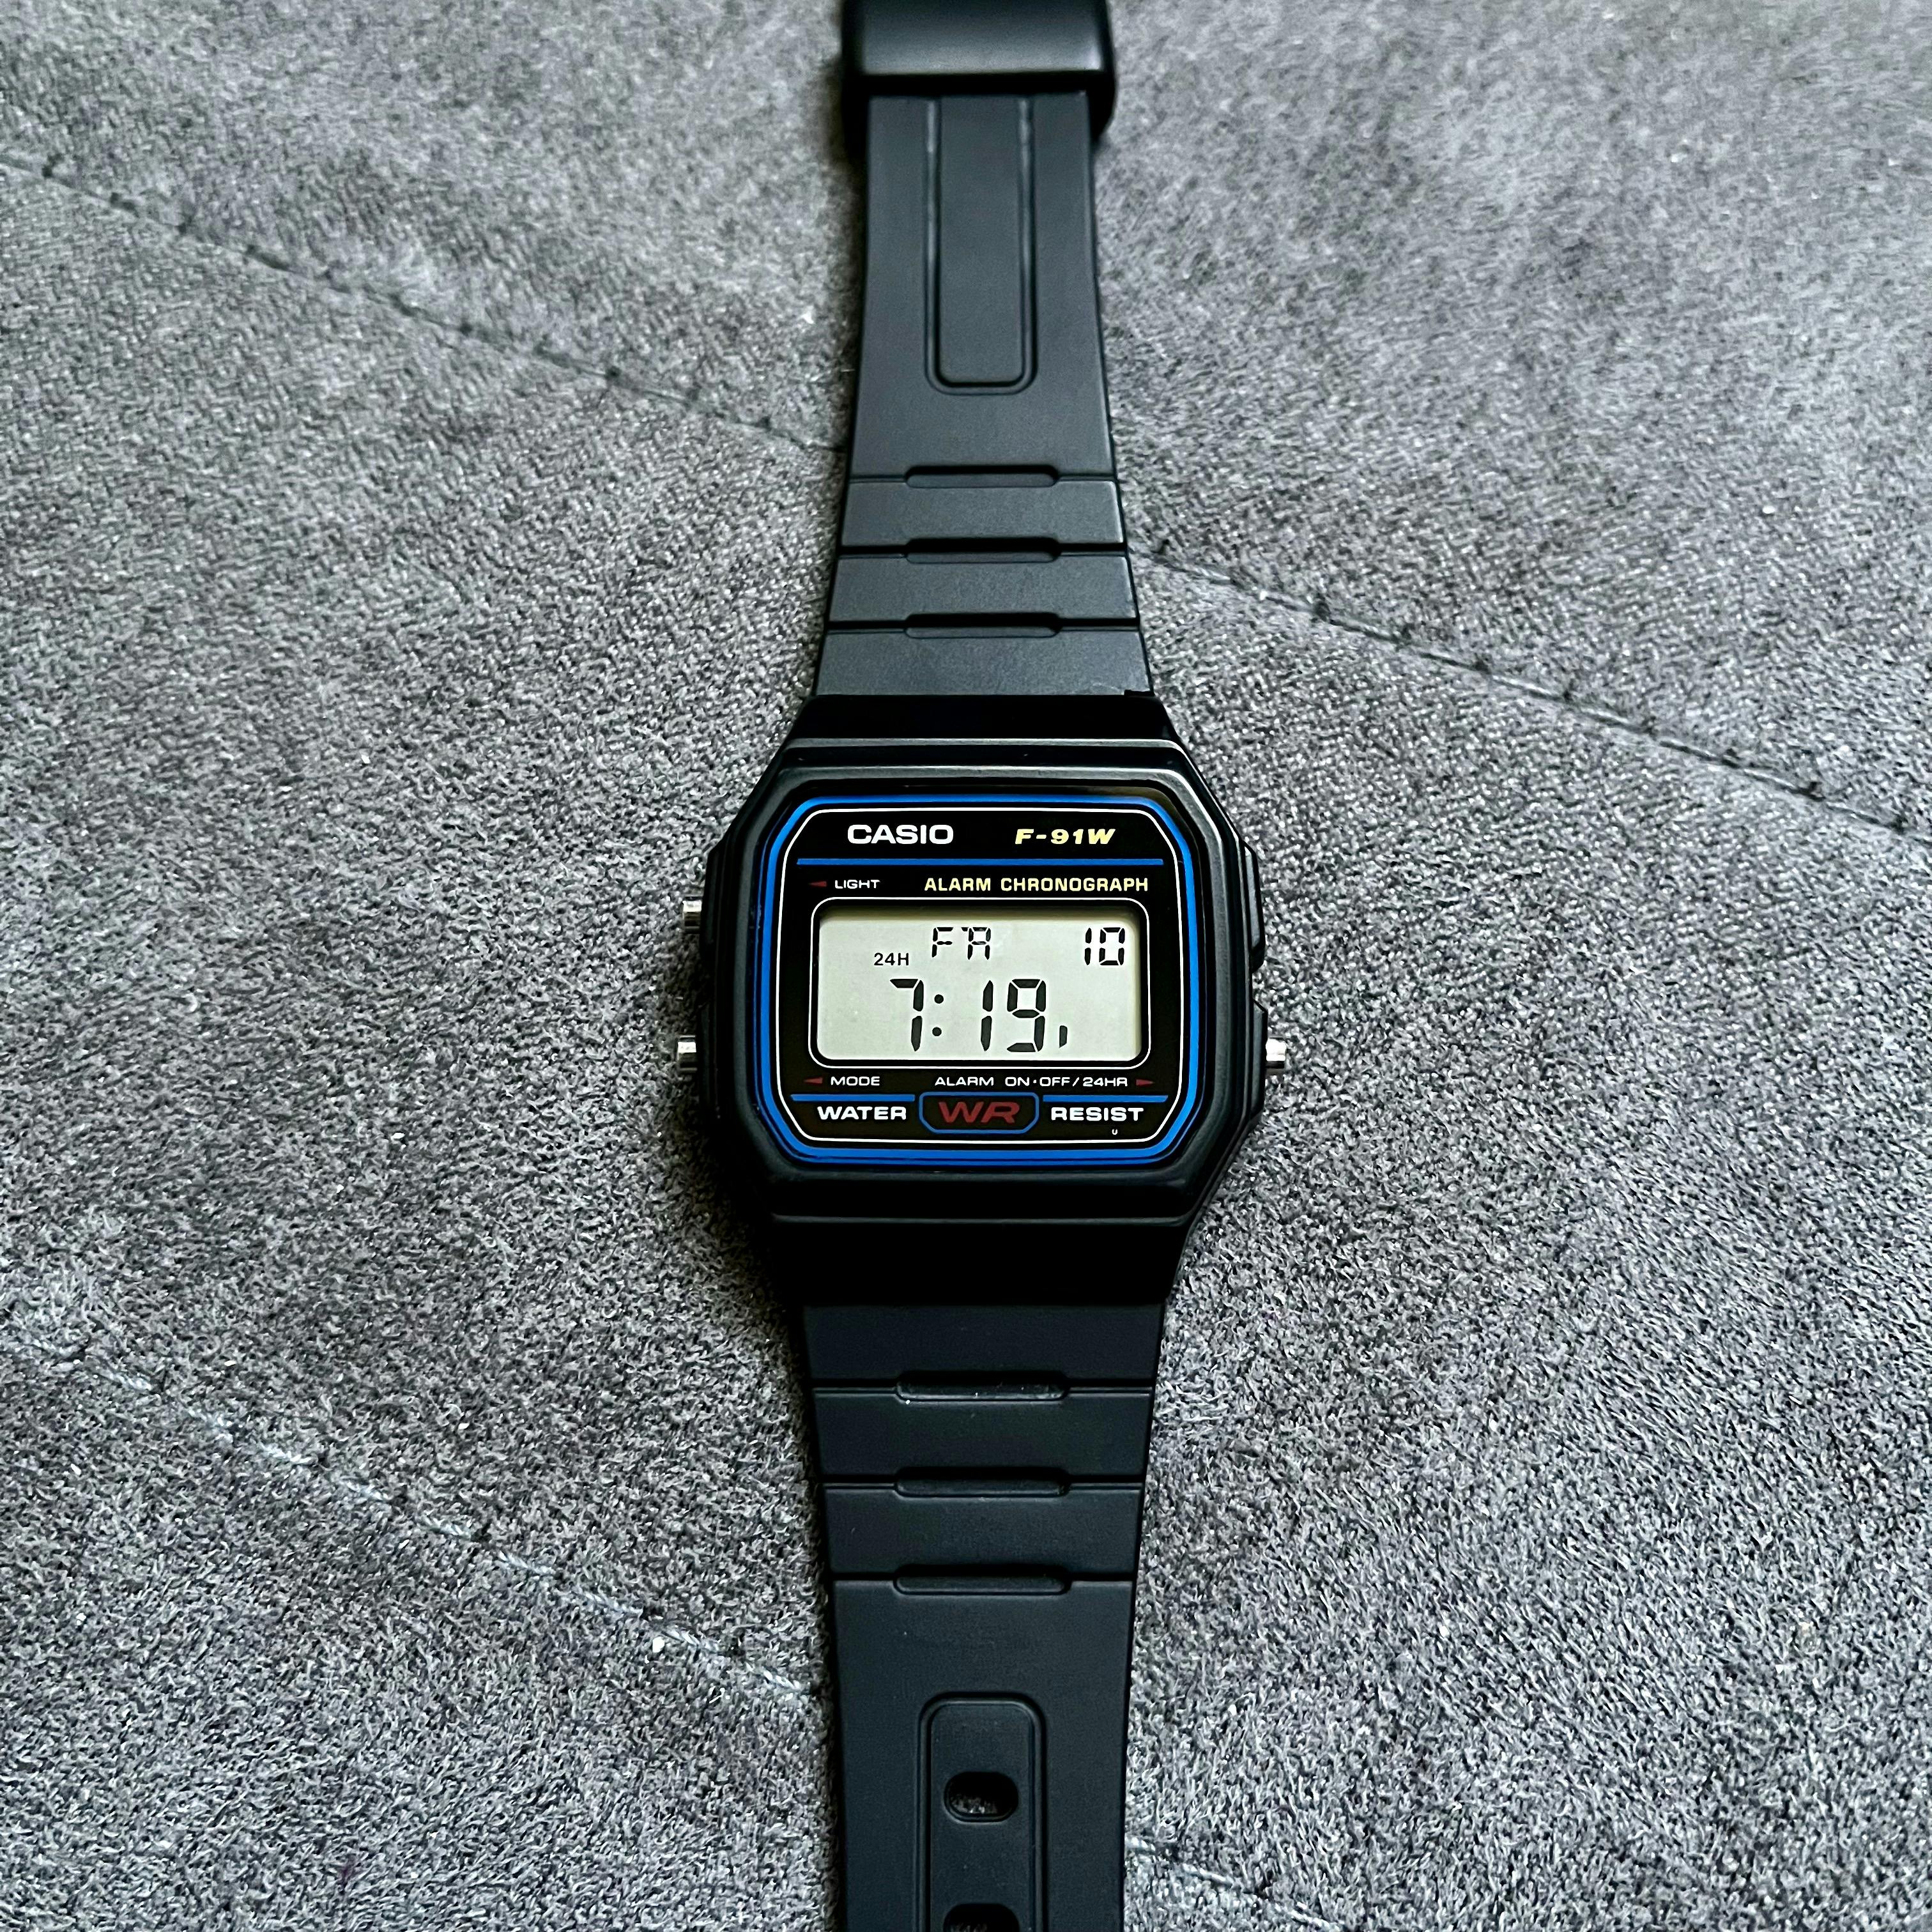 A Casio F-91W wristwatch.